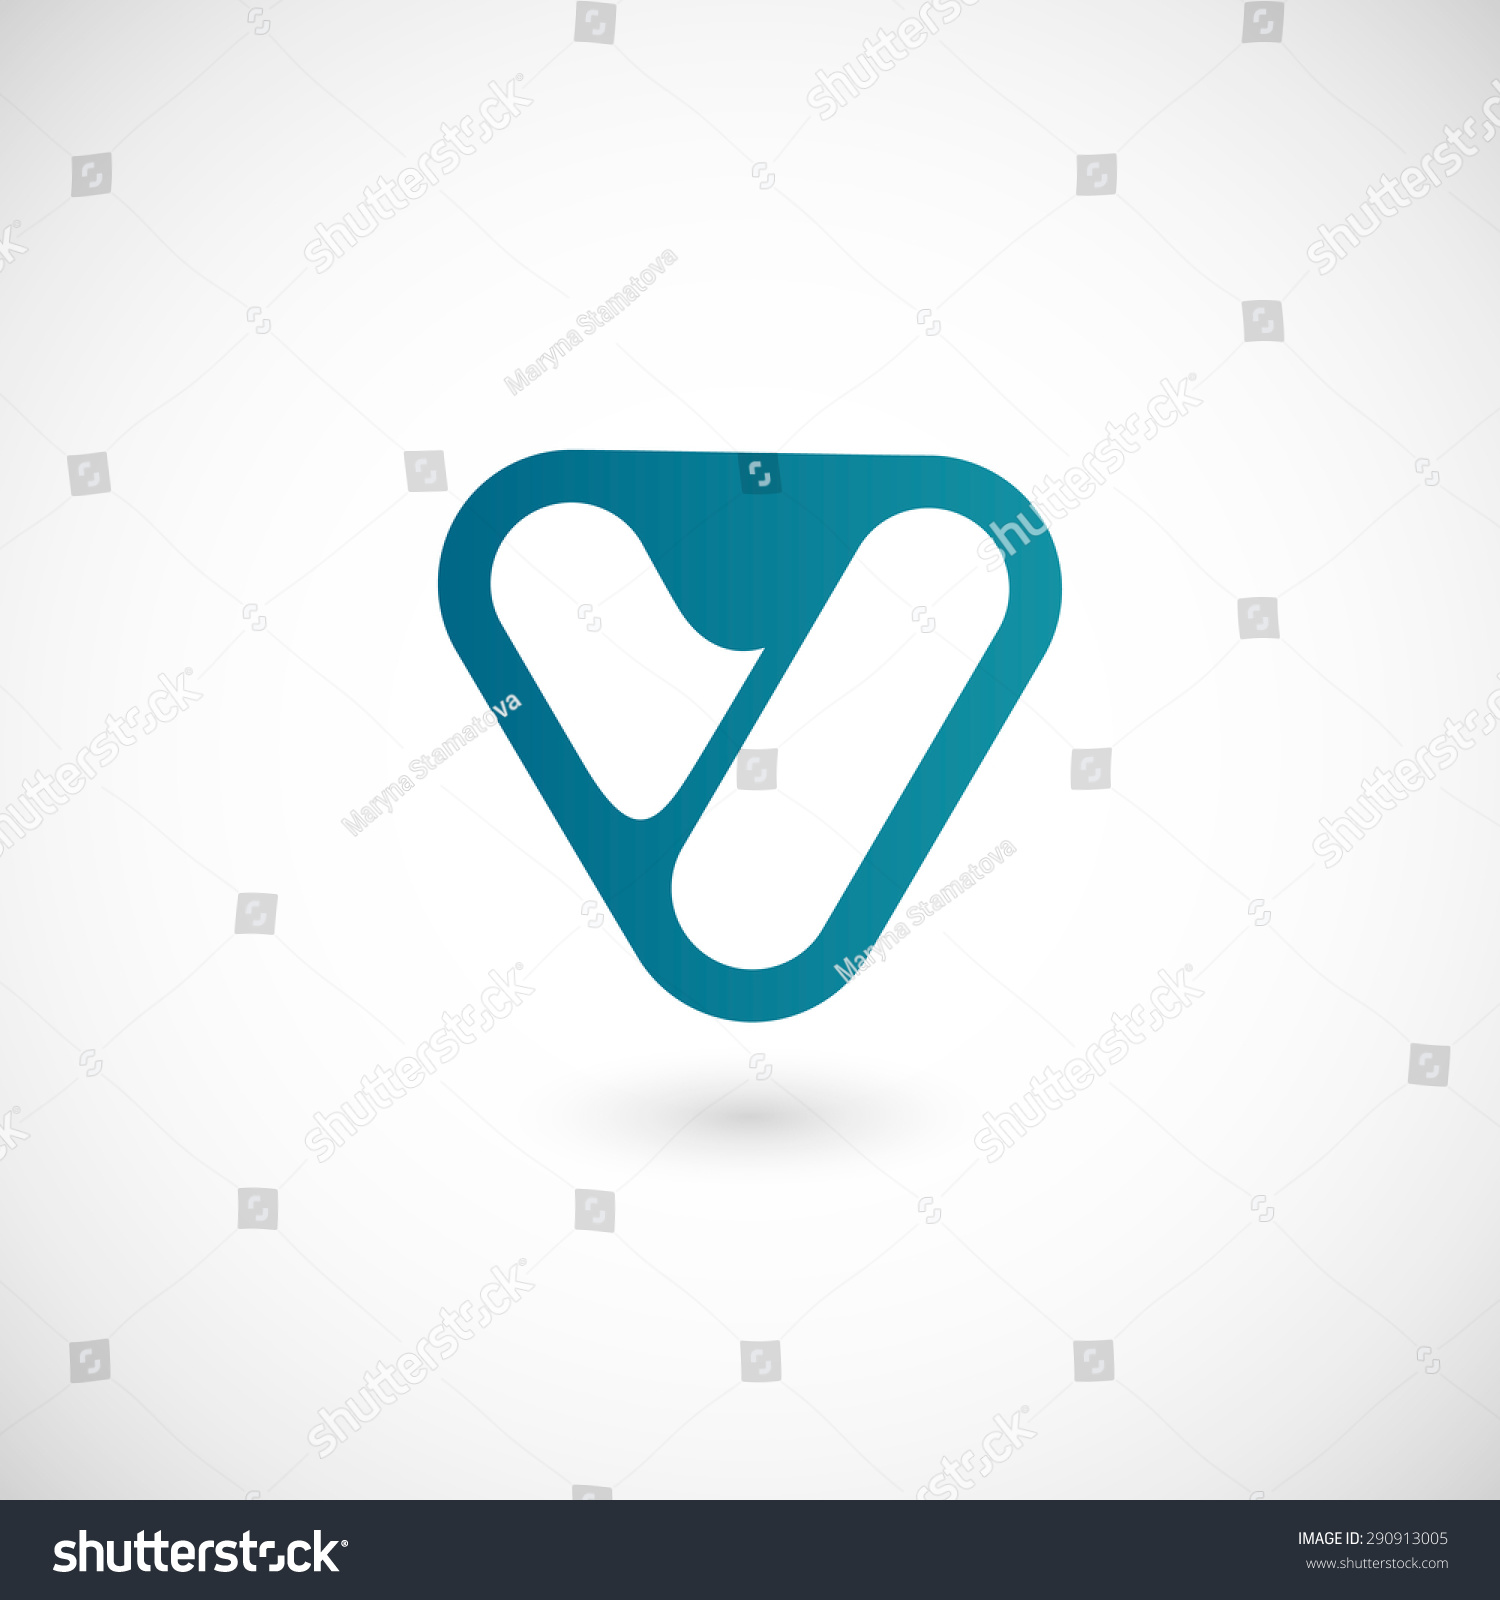 Logo V Letter. Isolated On White Background. Vector Illustration, Eps